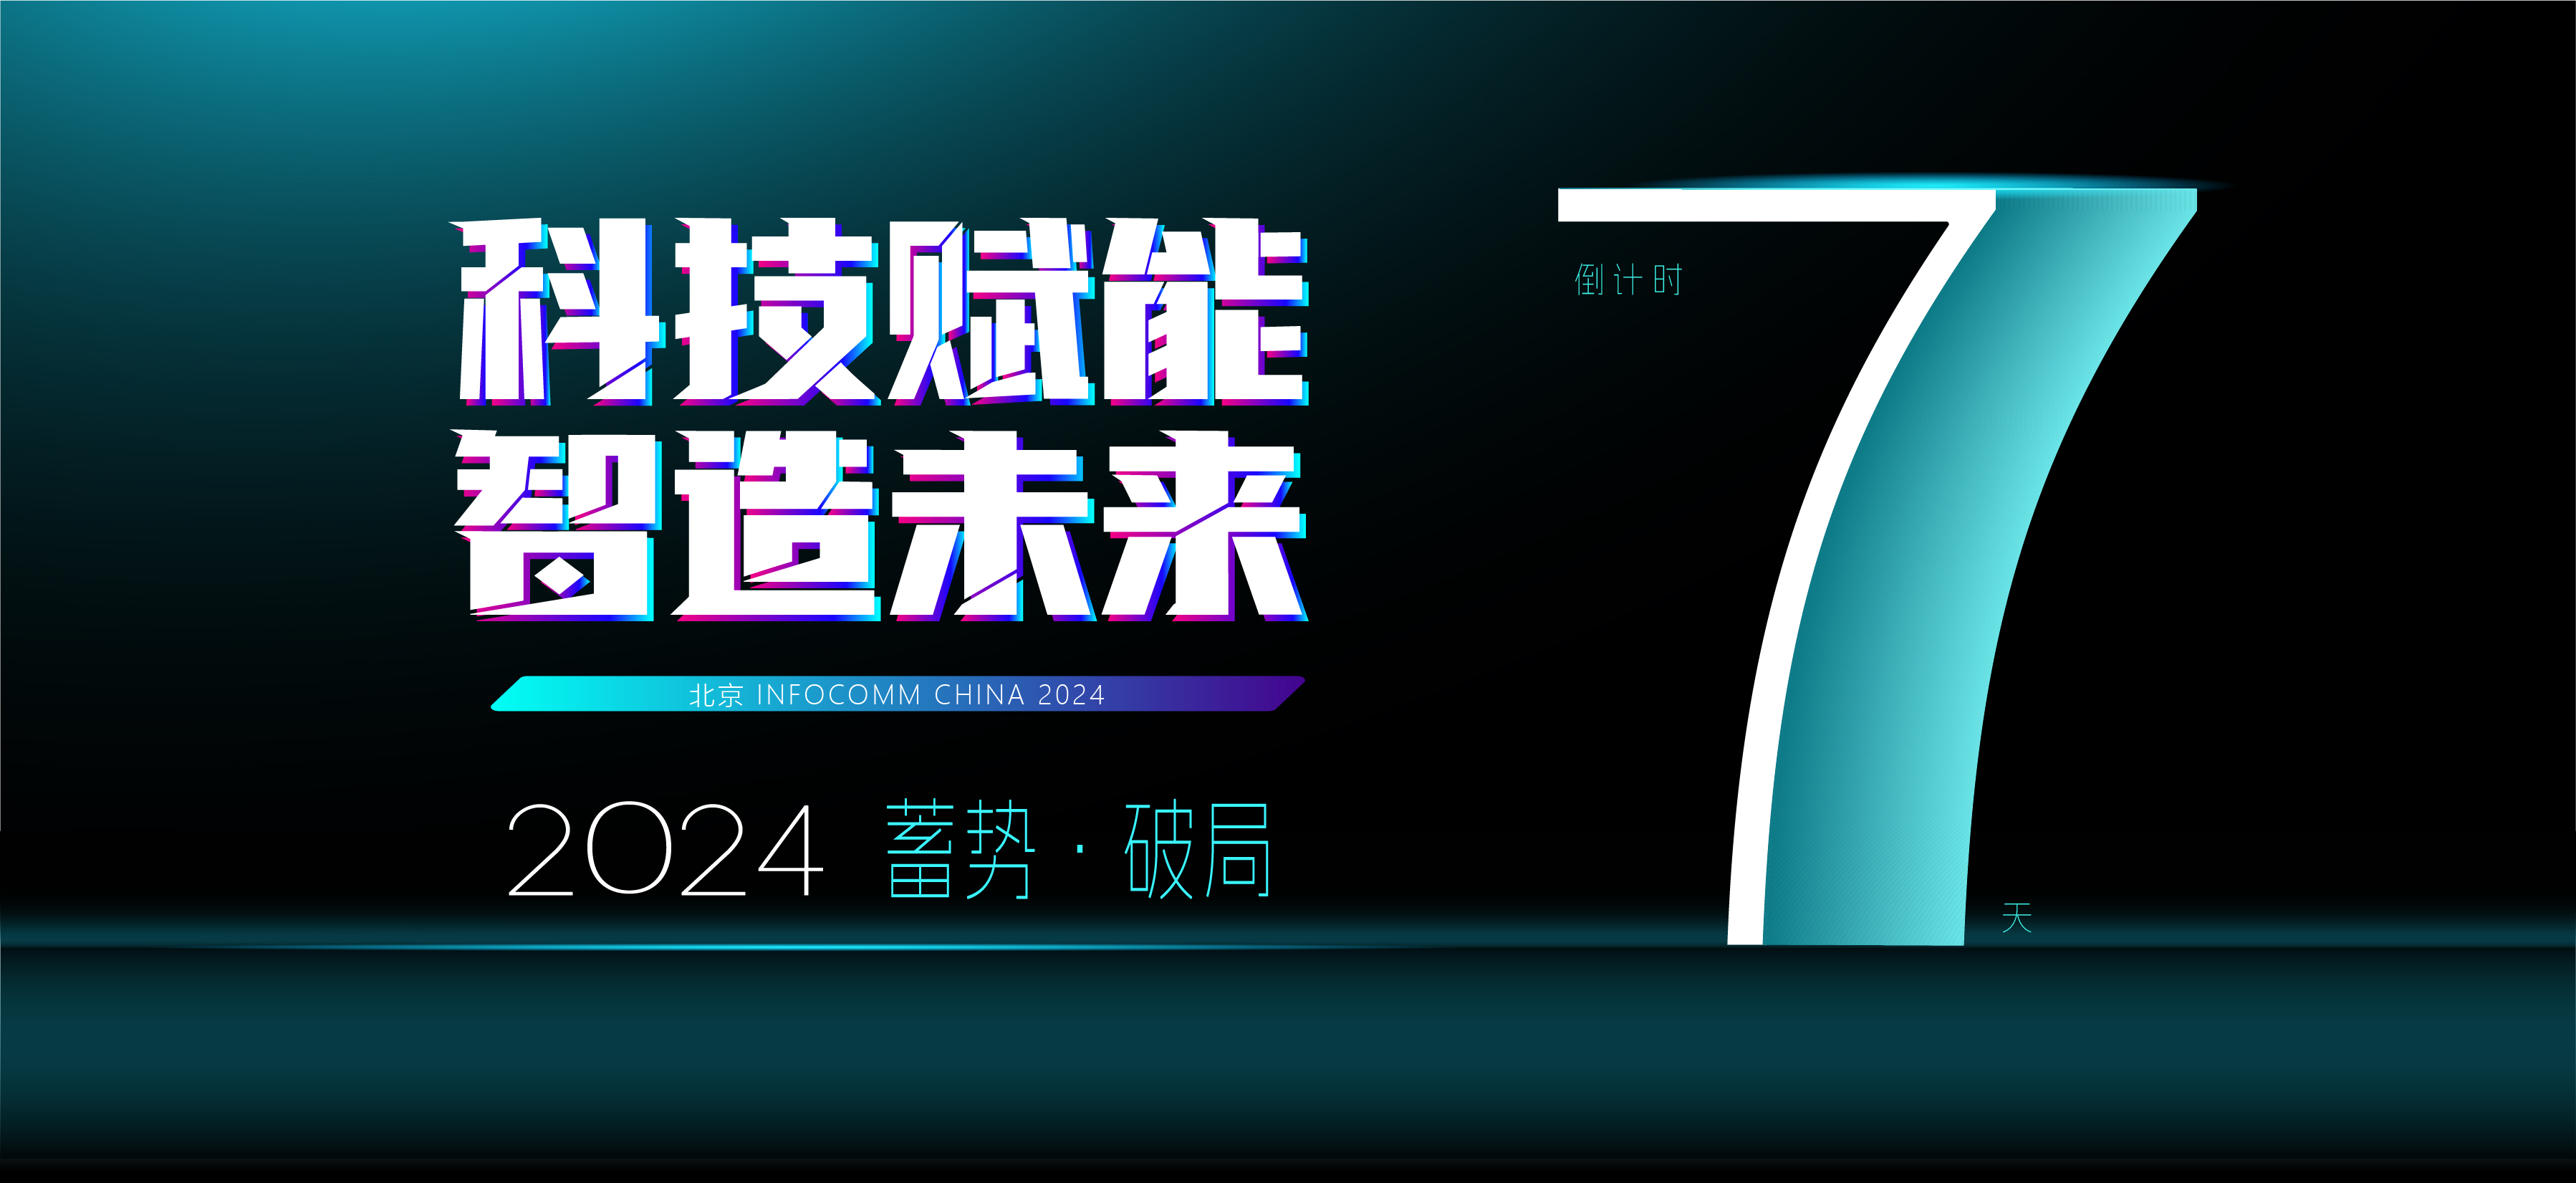 北京 infocomm China 2024 倒计时 7 天，精彩即将呈现！